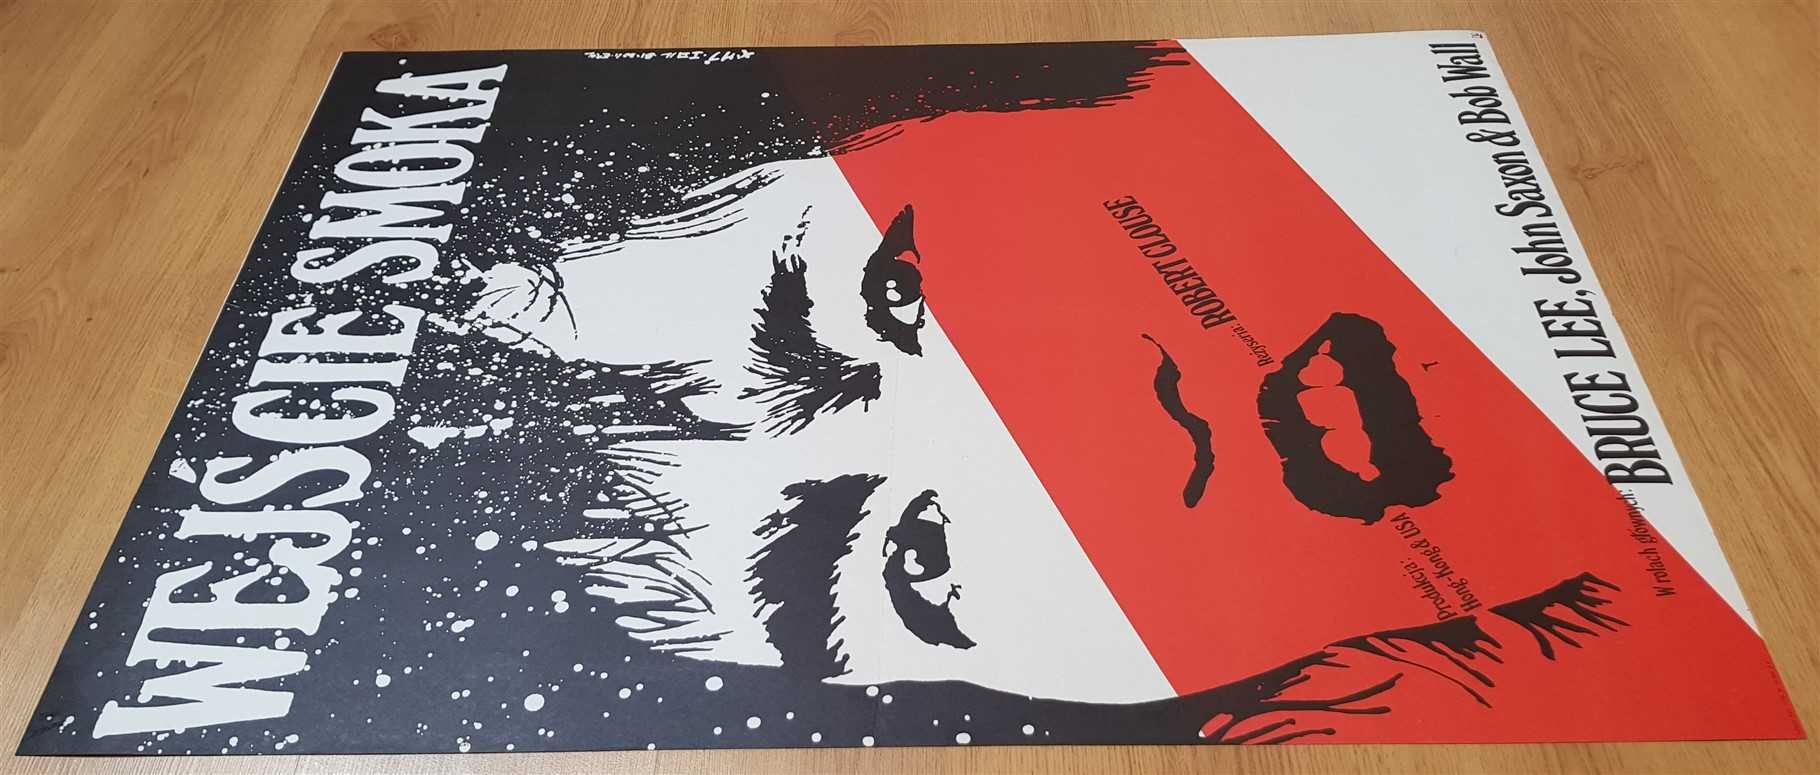 WEJŚCIE SMOKA, plakat filmowy z 1981 Erol, plakat PRL, Bruce Lee